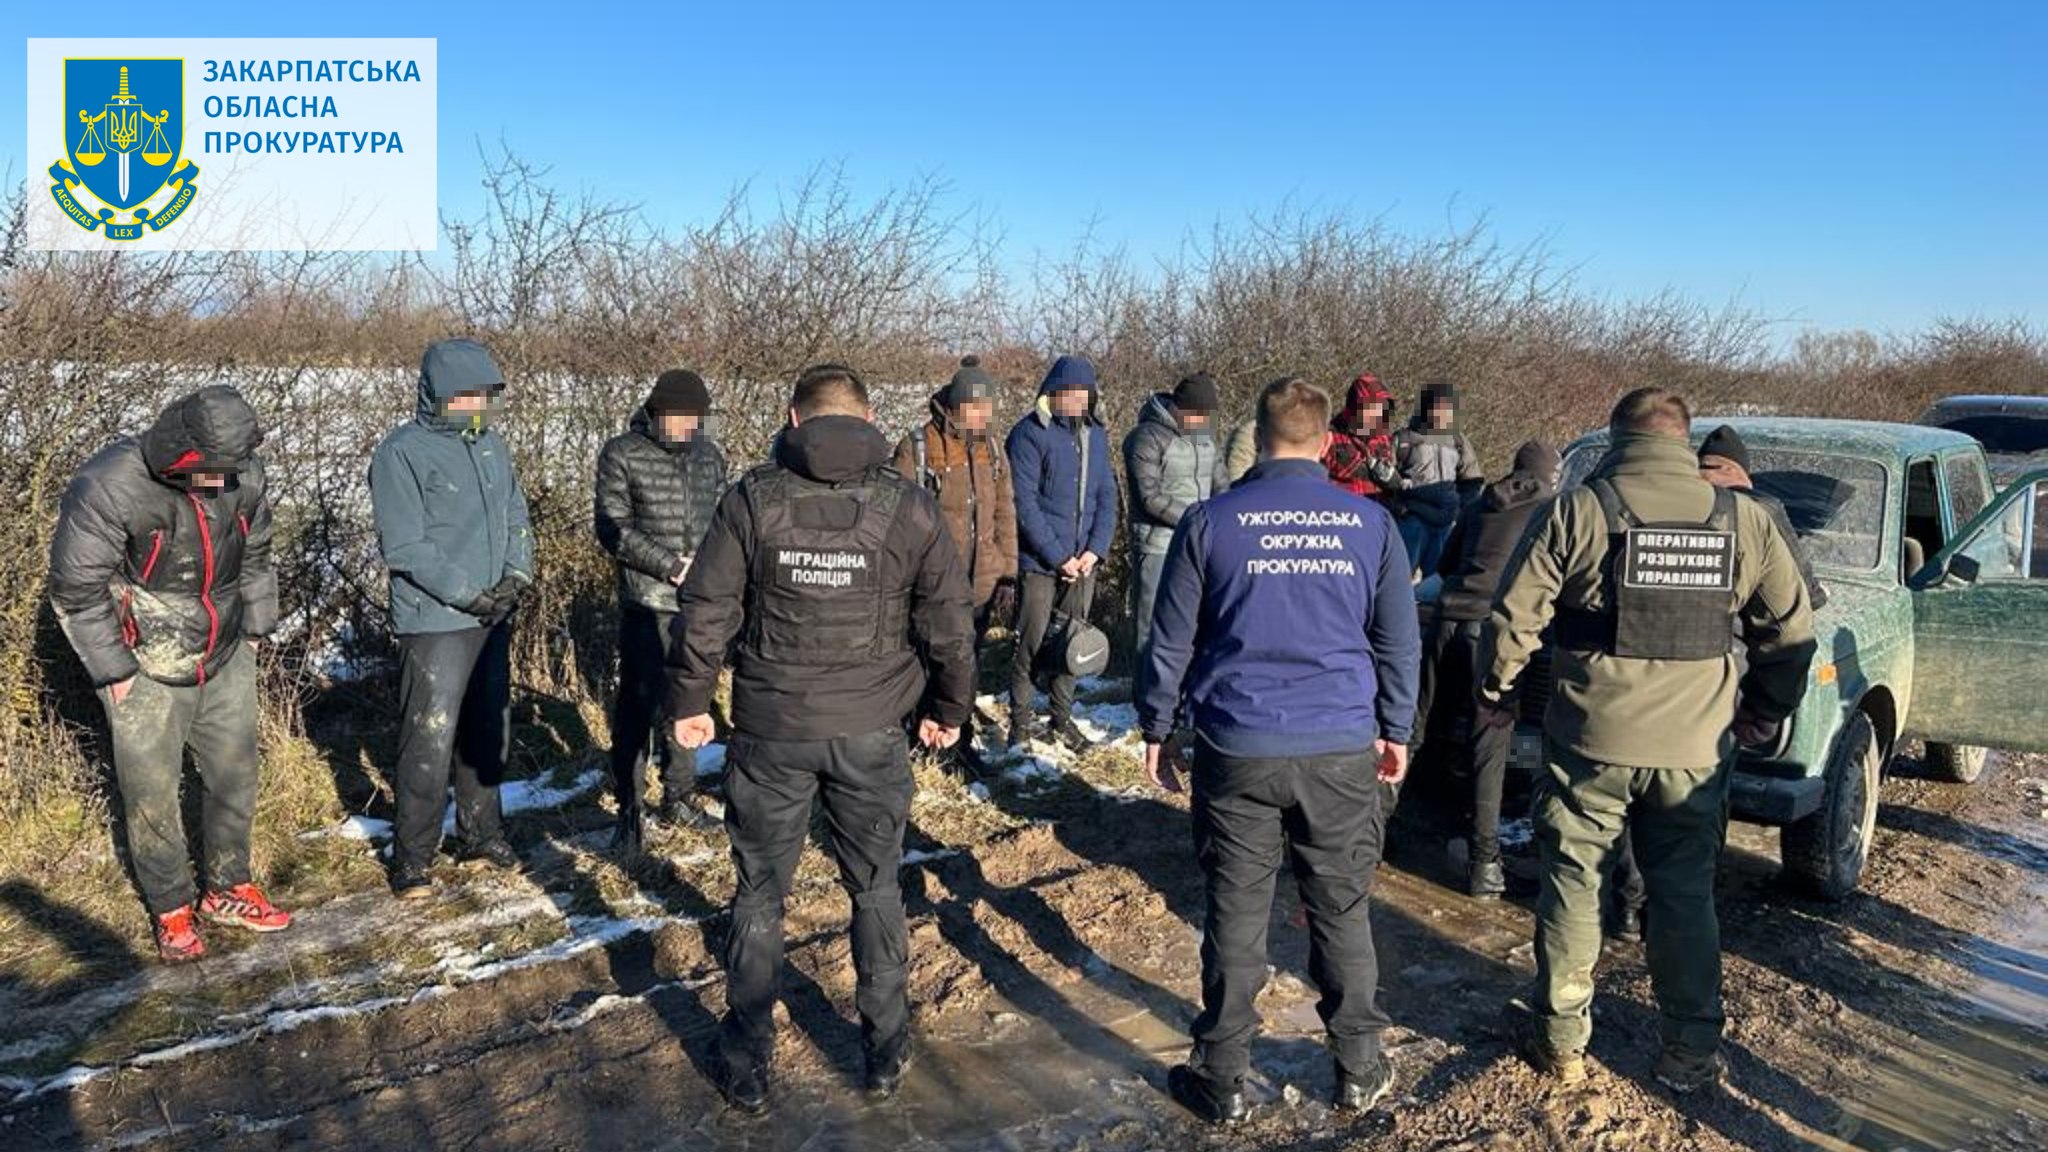 Закарпатці, які намагалися переправити 11 військовозобов’язаних в Угорщину, відповідатимуть перед судом (ФОТО)